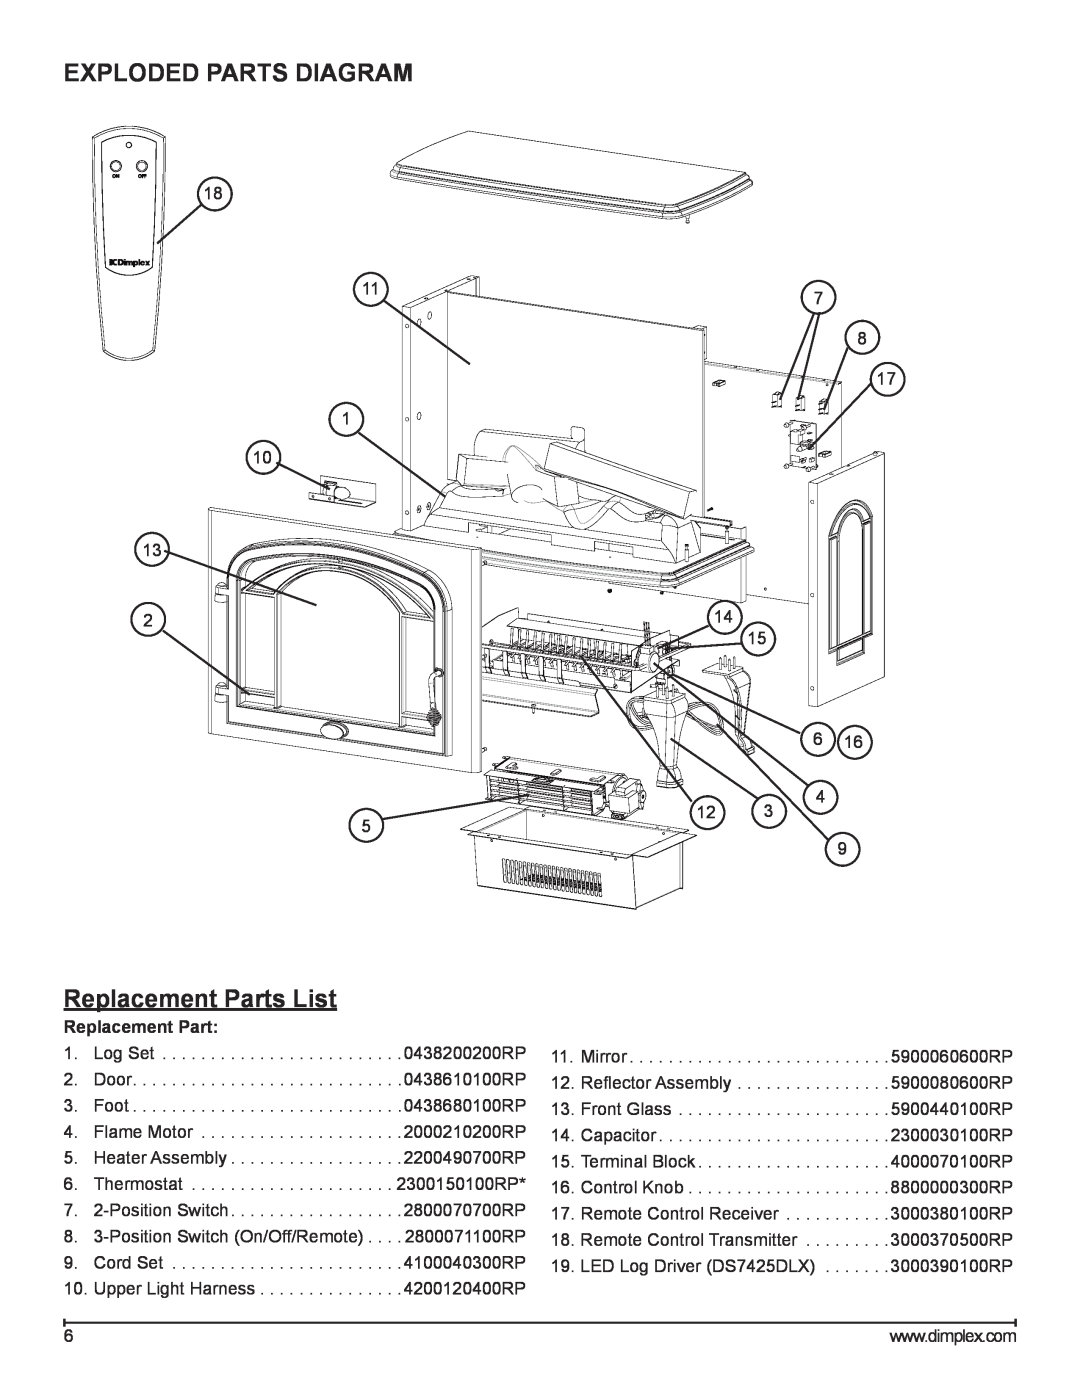 Dimplex DS7420, DS7425DLX service manual Exploded Parts Diagram, Replacement Parts List 